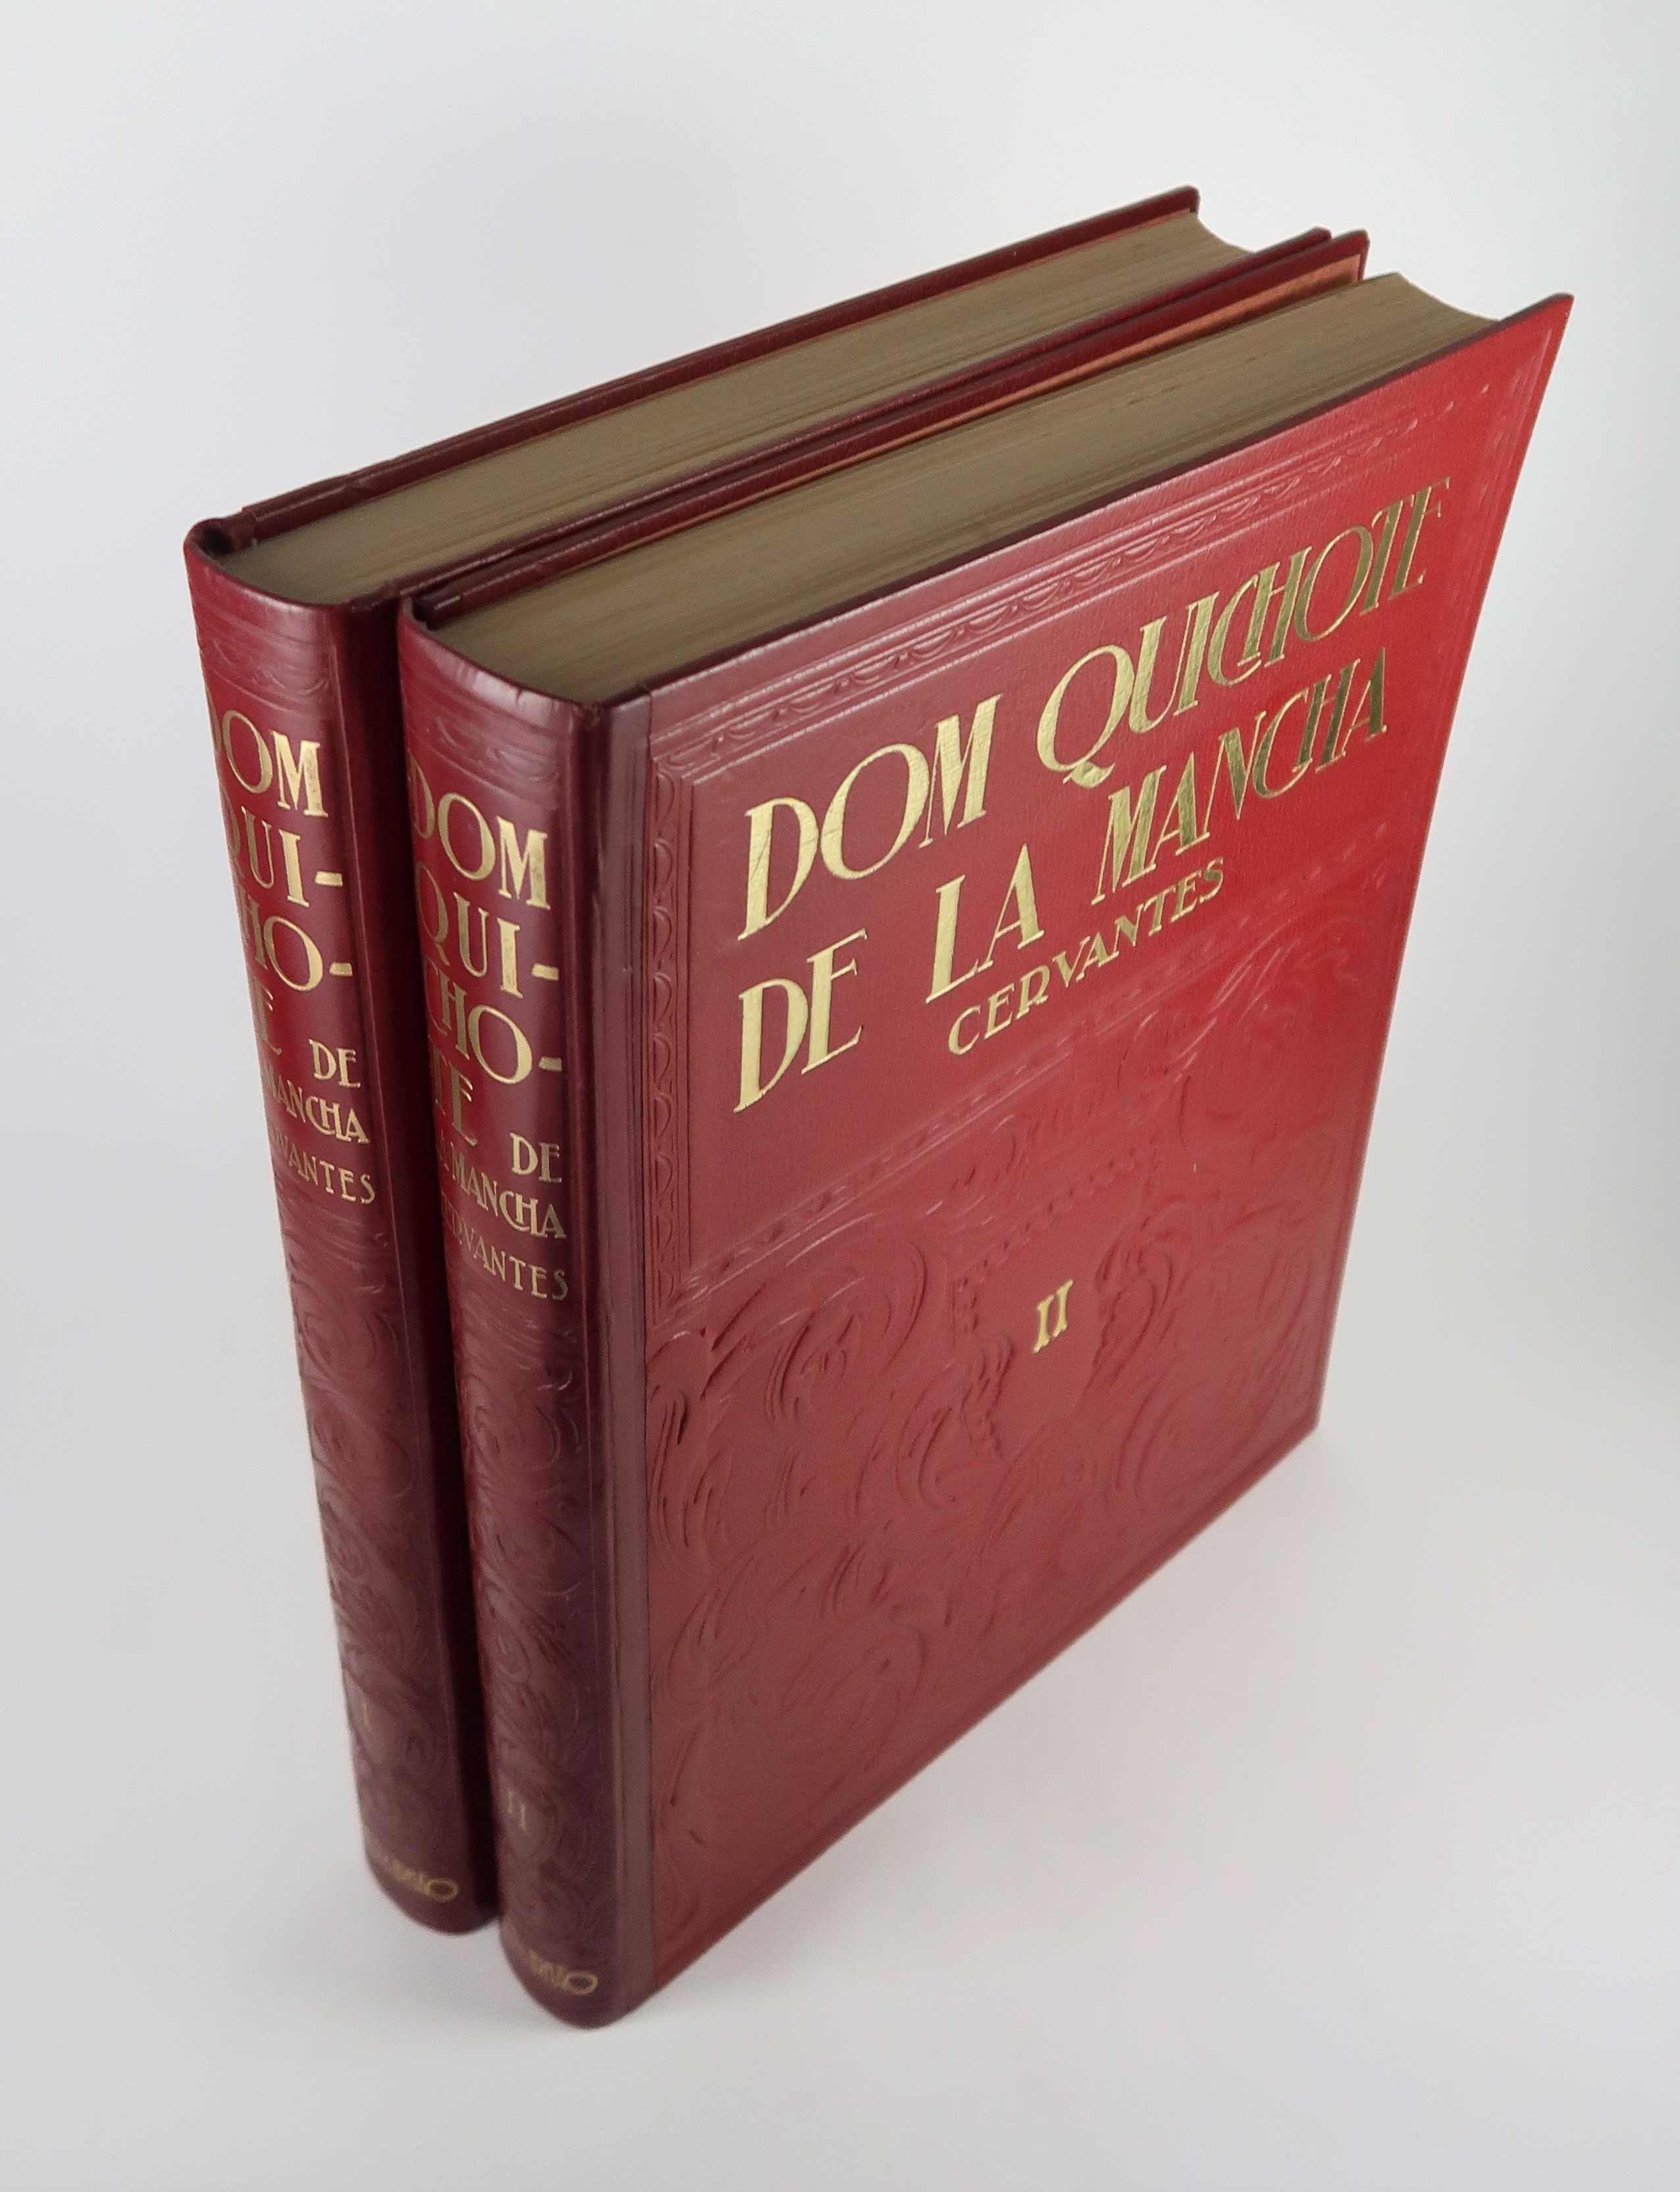 Dom Quixote de La Mancha - Cervantes - Edição Lello & Irmão